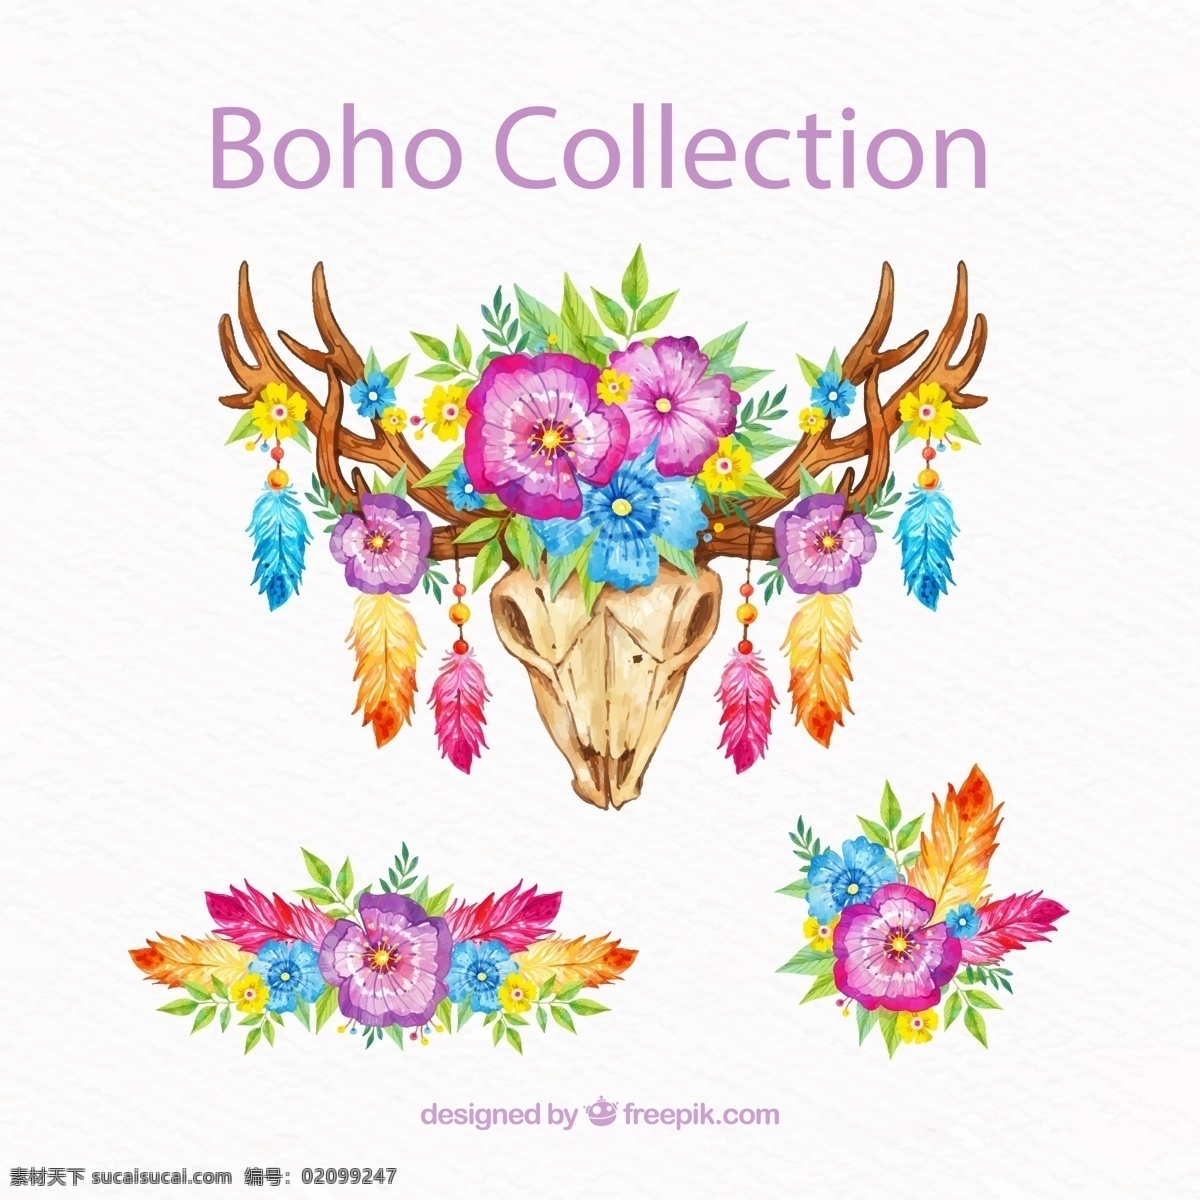 波西 米亚 风 花卉 装饰物 彩绘 波西米亚风 羽毛 矢量 高清图片